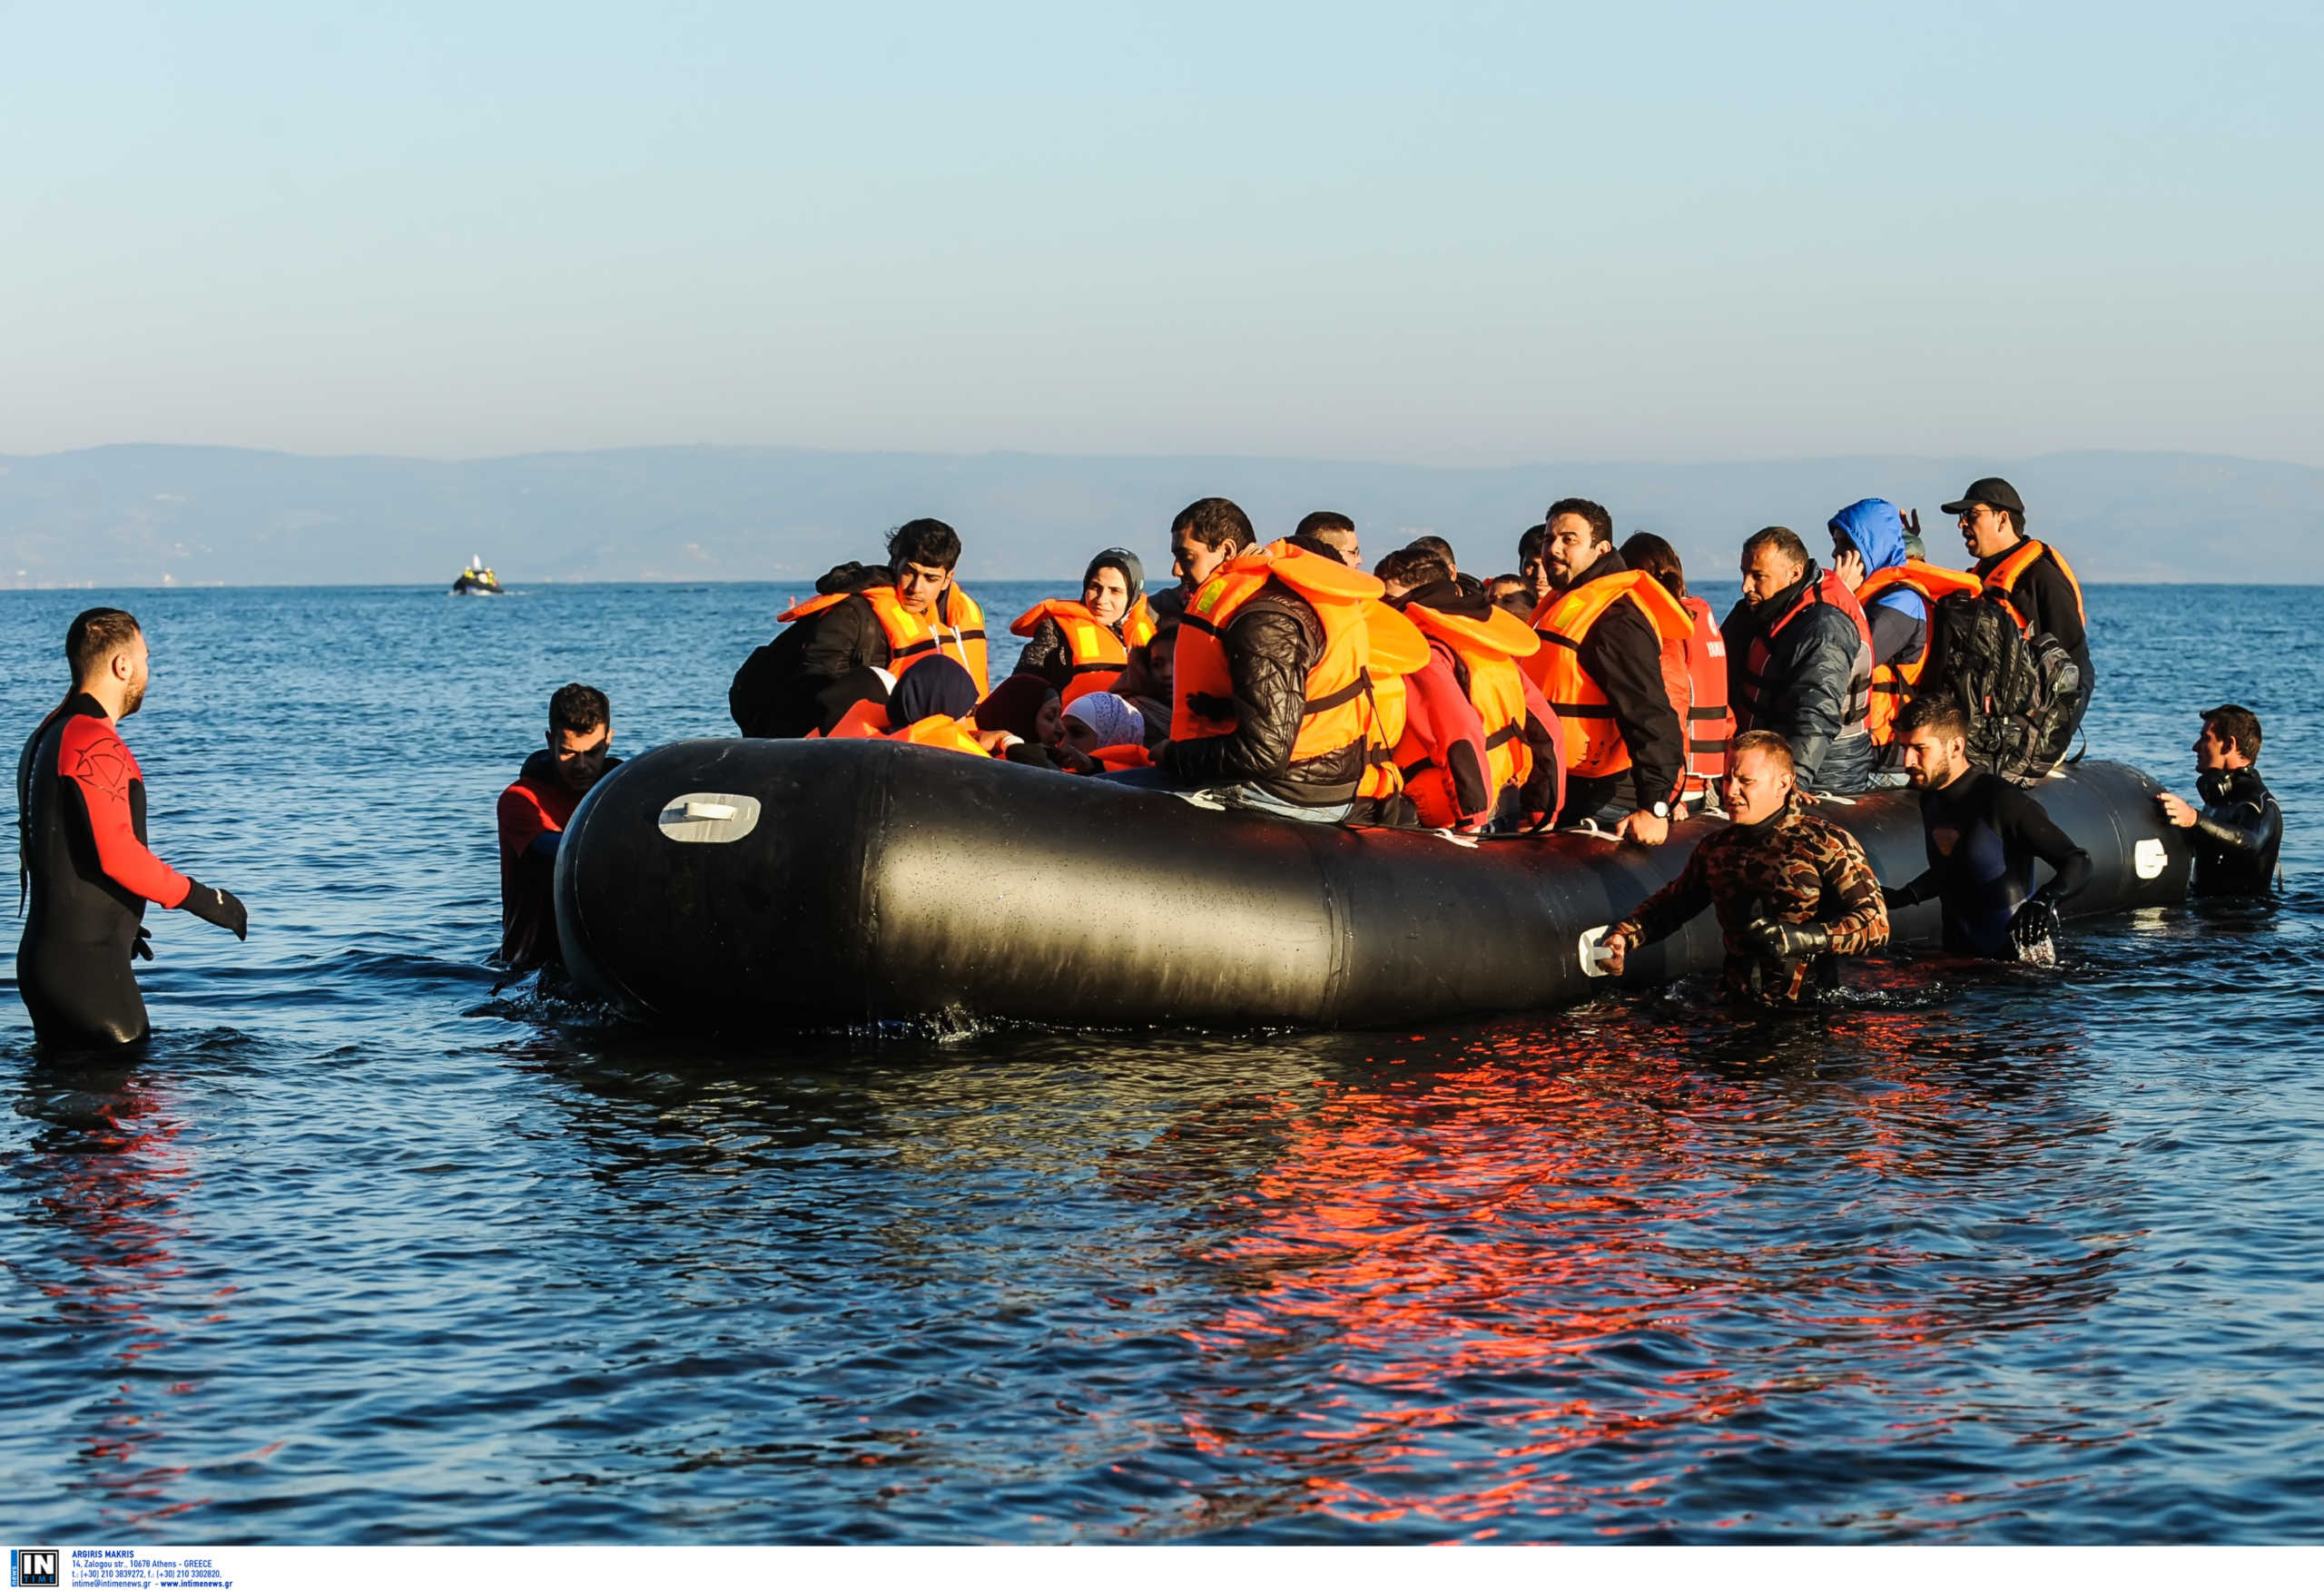 Οι διακινητές συνεχίζουν απτόητοι! Έστειλαν νέες βάρκες με μετανάστες σε Λέσβο και Κω!